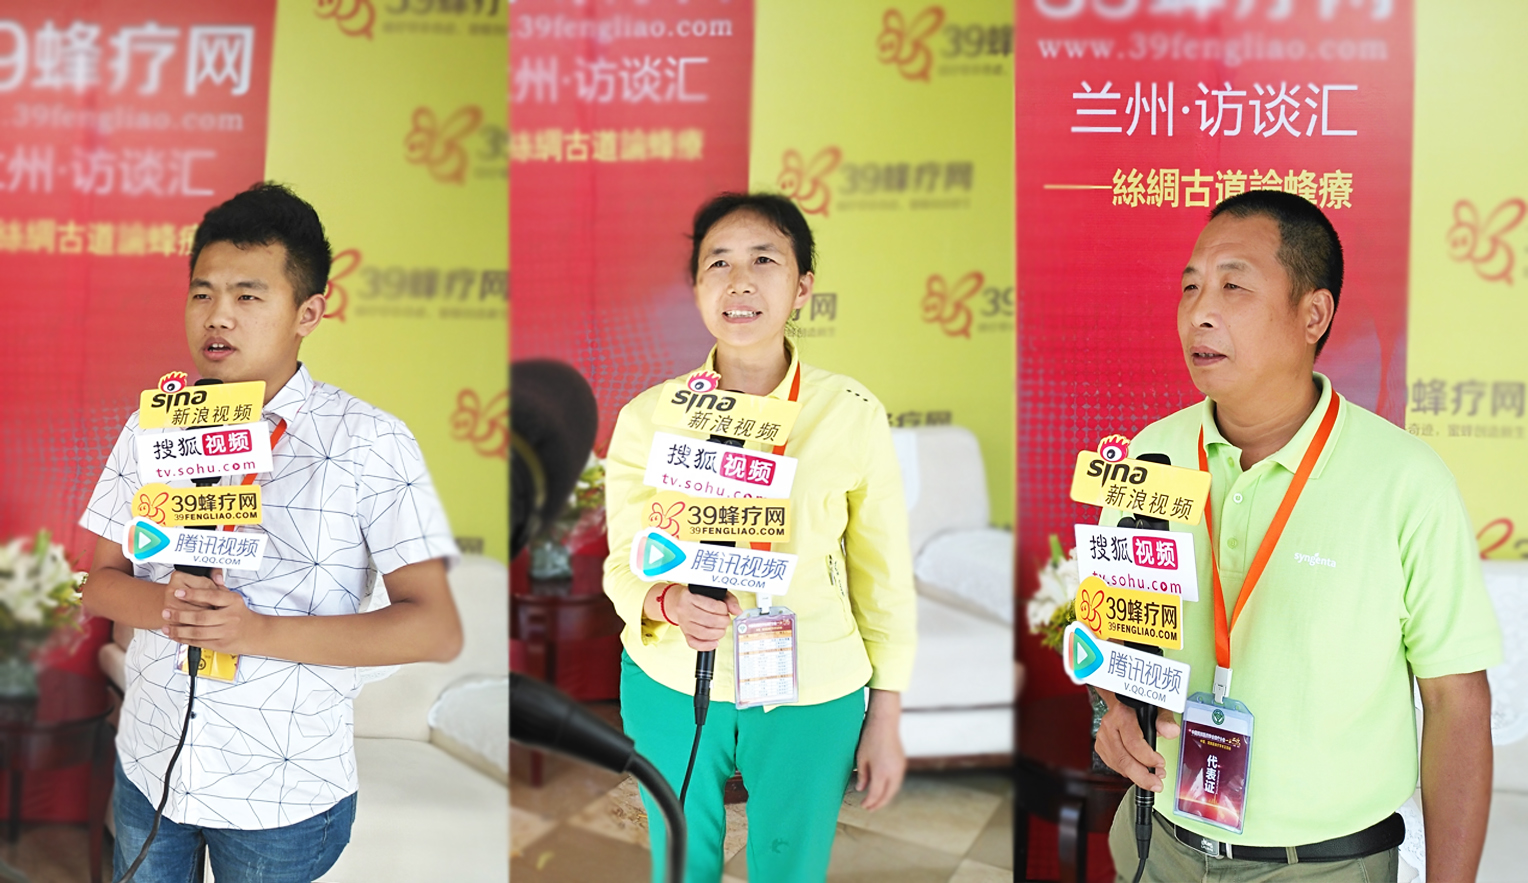 2017北京39蜂疗培训班 中国·兰州公益行